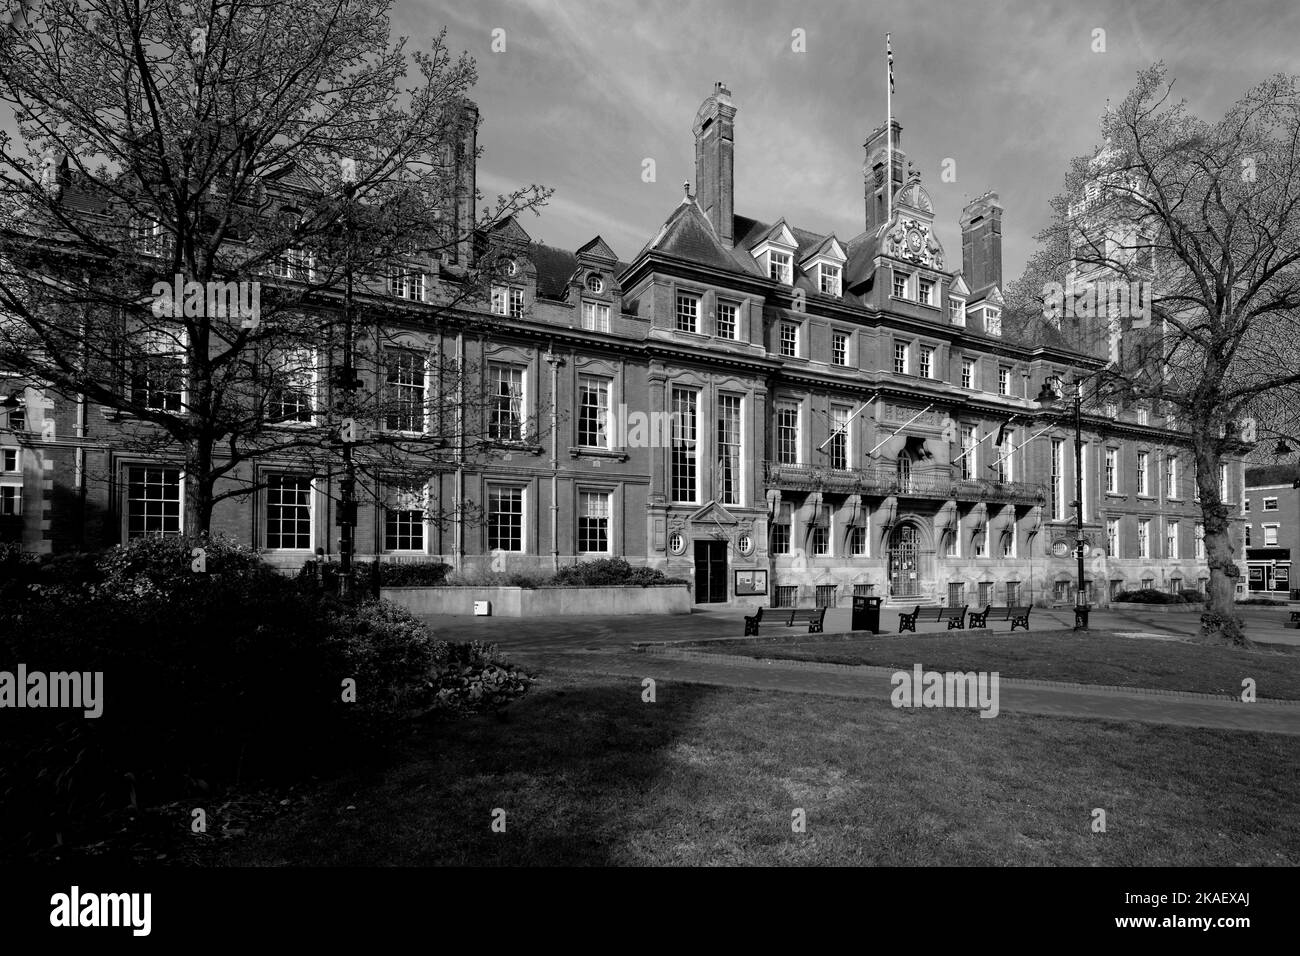 Das Rathausgebäude in den Rathausplatz-Gärten, Leicester City, Leicestershire, England; Großbritannien Stockfoto